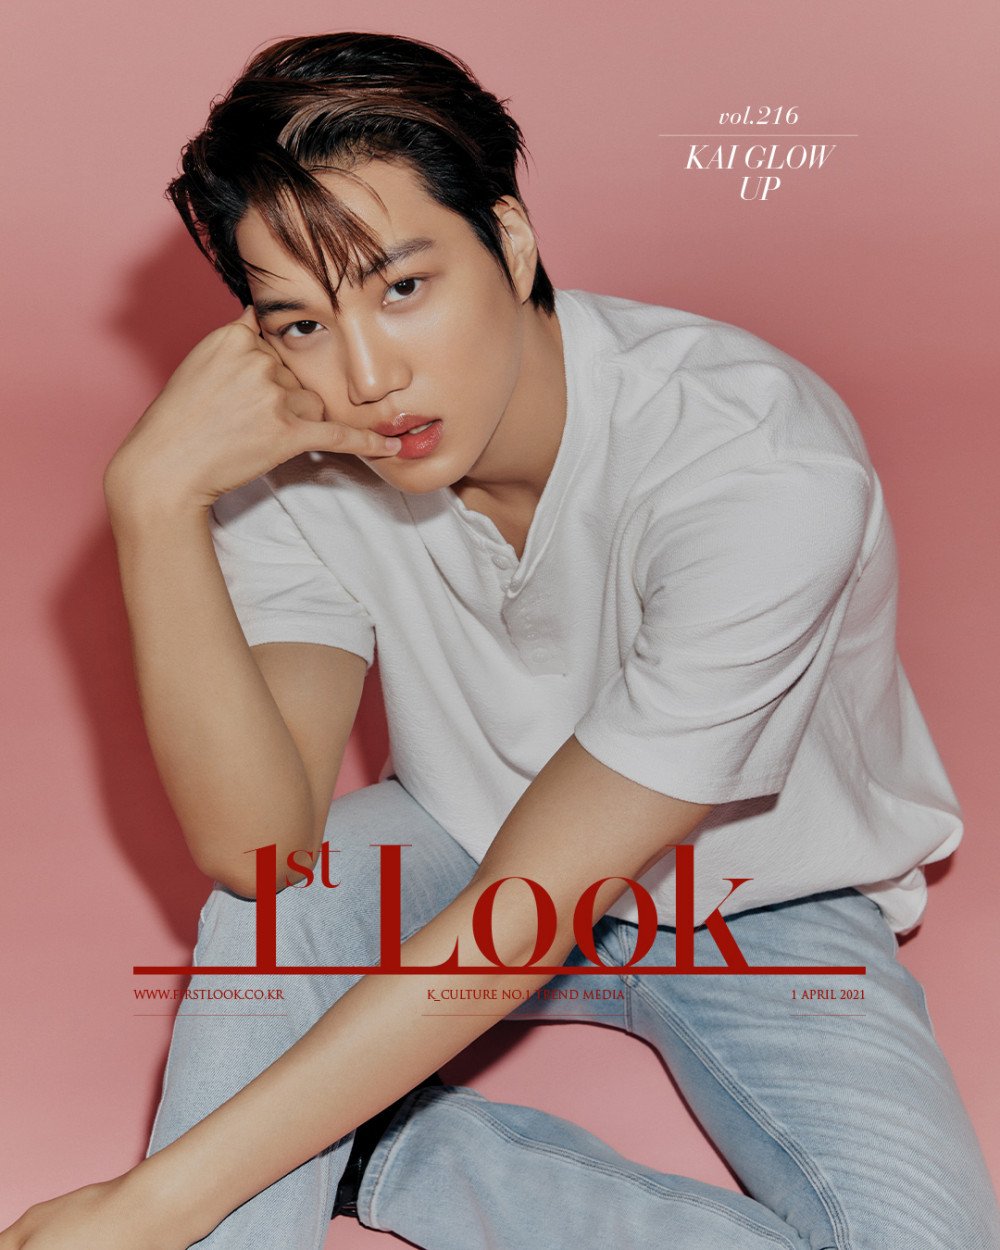 Кай из EXO поражает своей харизмой в журнале "1st Look"